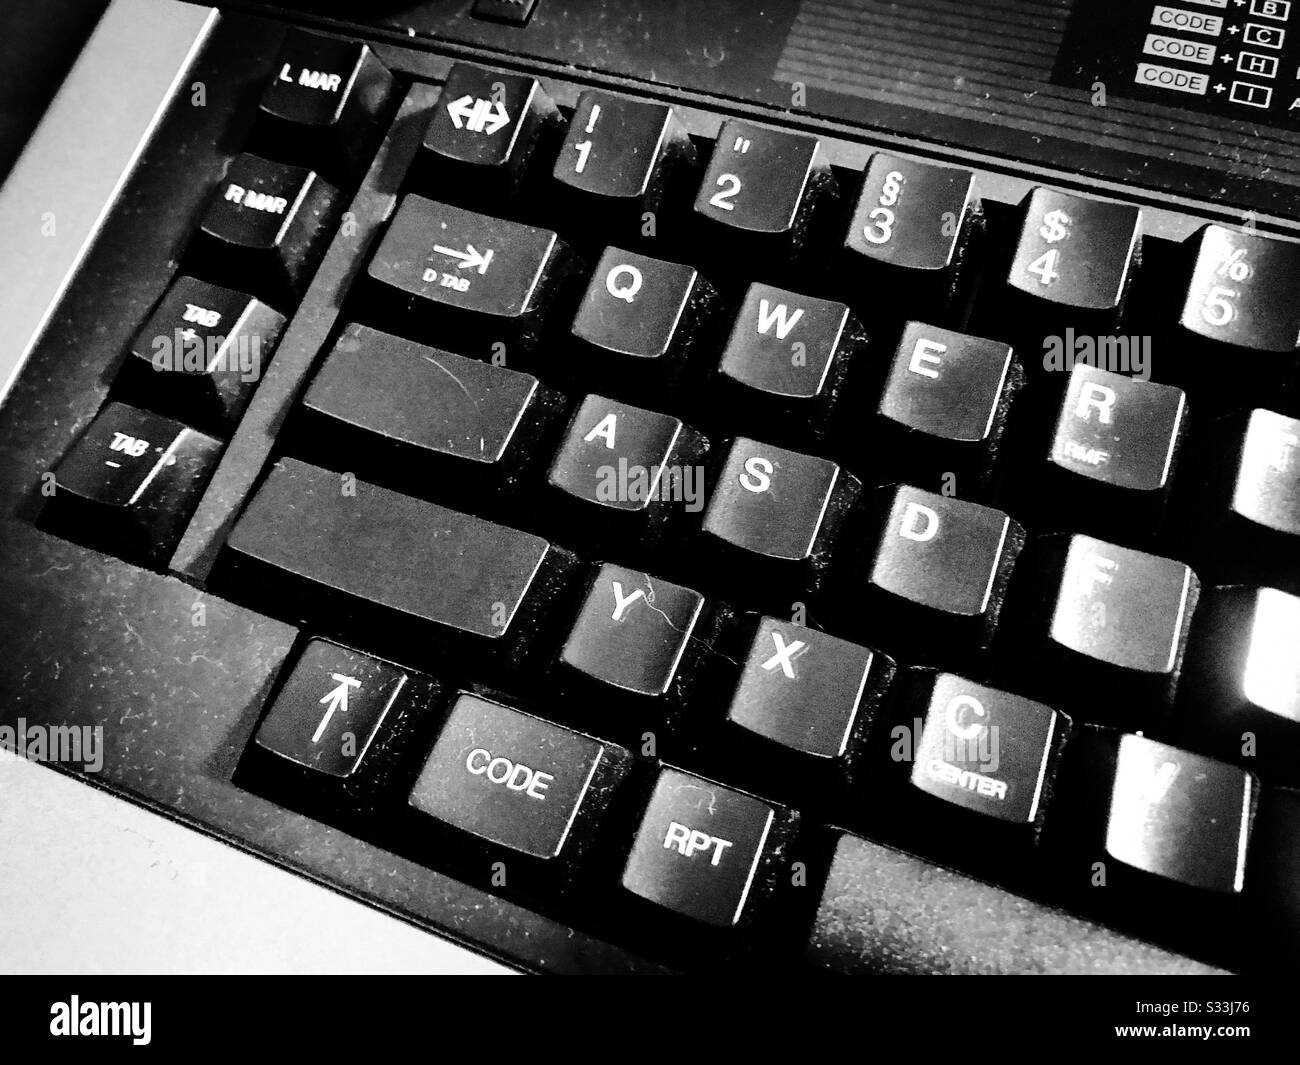 Typewriter keyboard detail closeup black and white Stock Photo